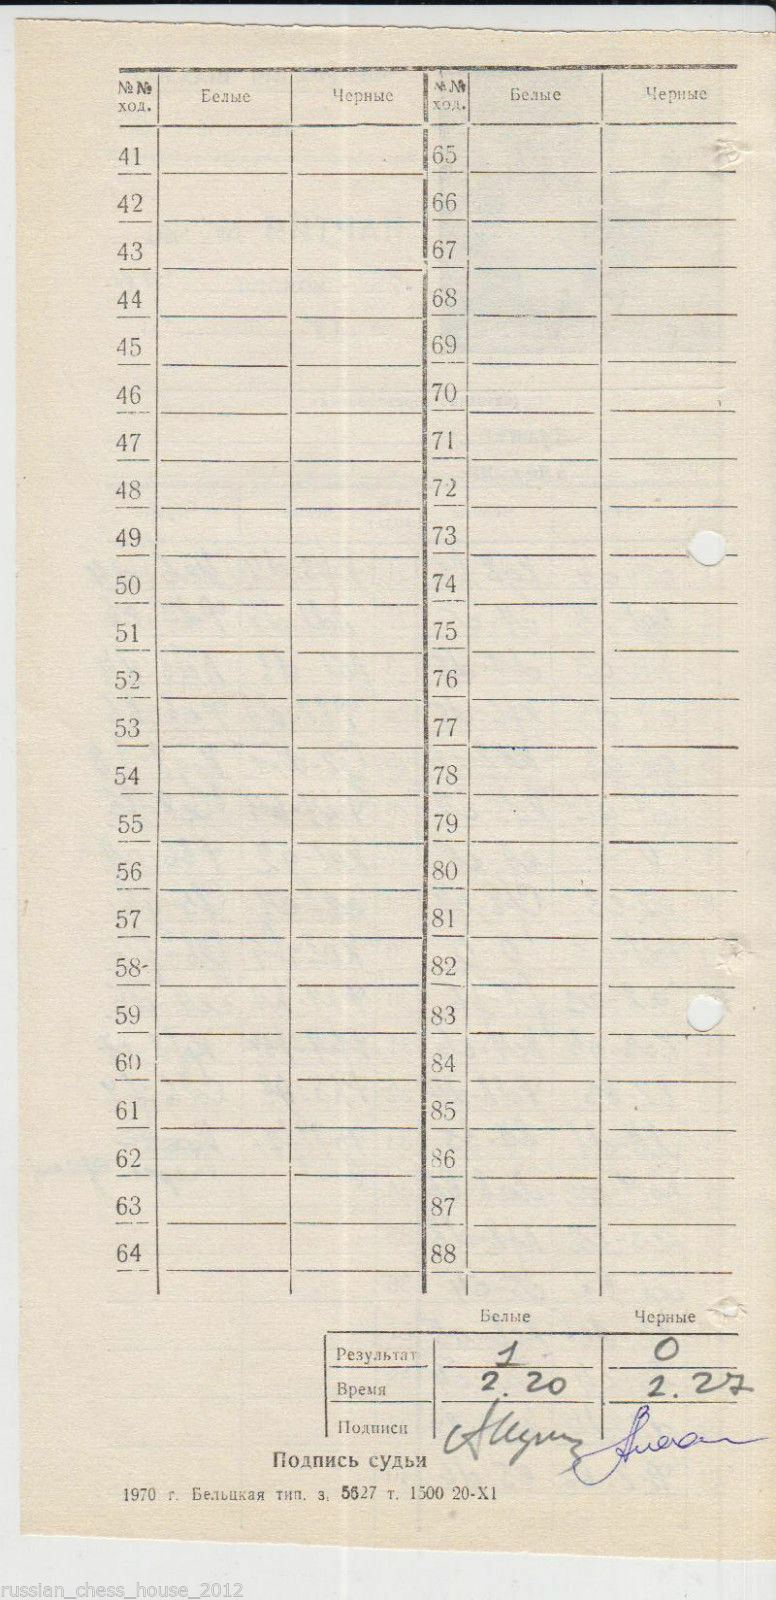 11583.Russian chess. Scoresheet of game Kushnir - Alekhina. 1970